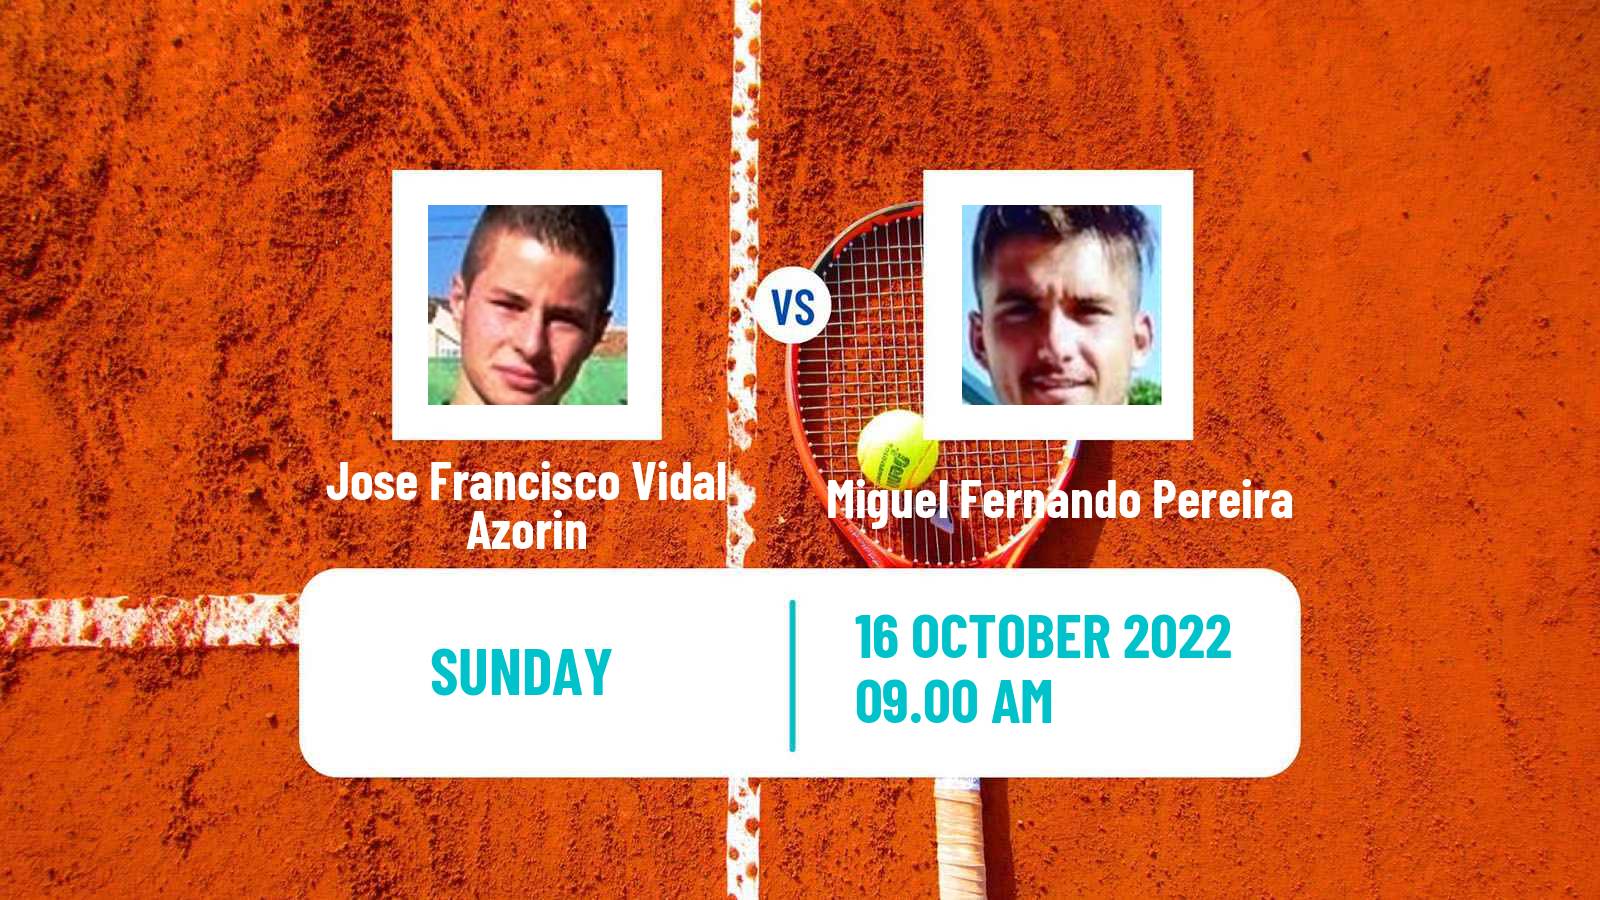 Tennis ATP Challenger Jose Francisco Vidal Azorin - Miguel Fernando Pereira